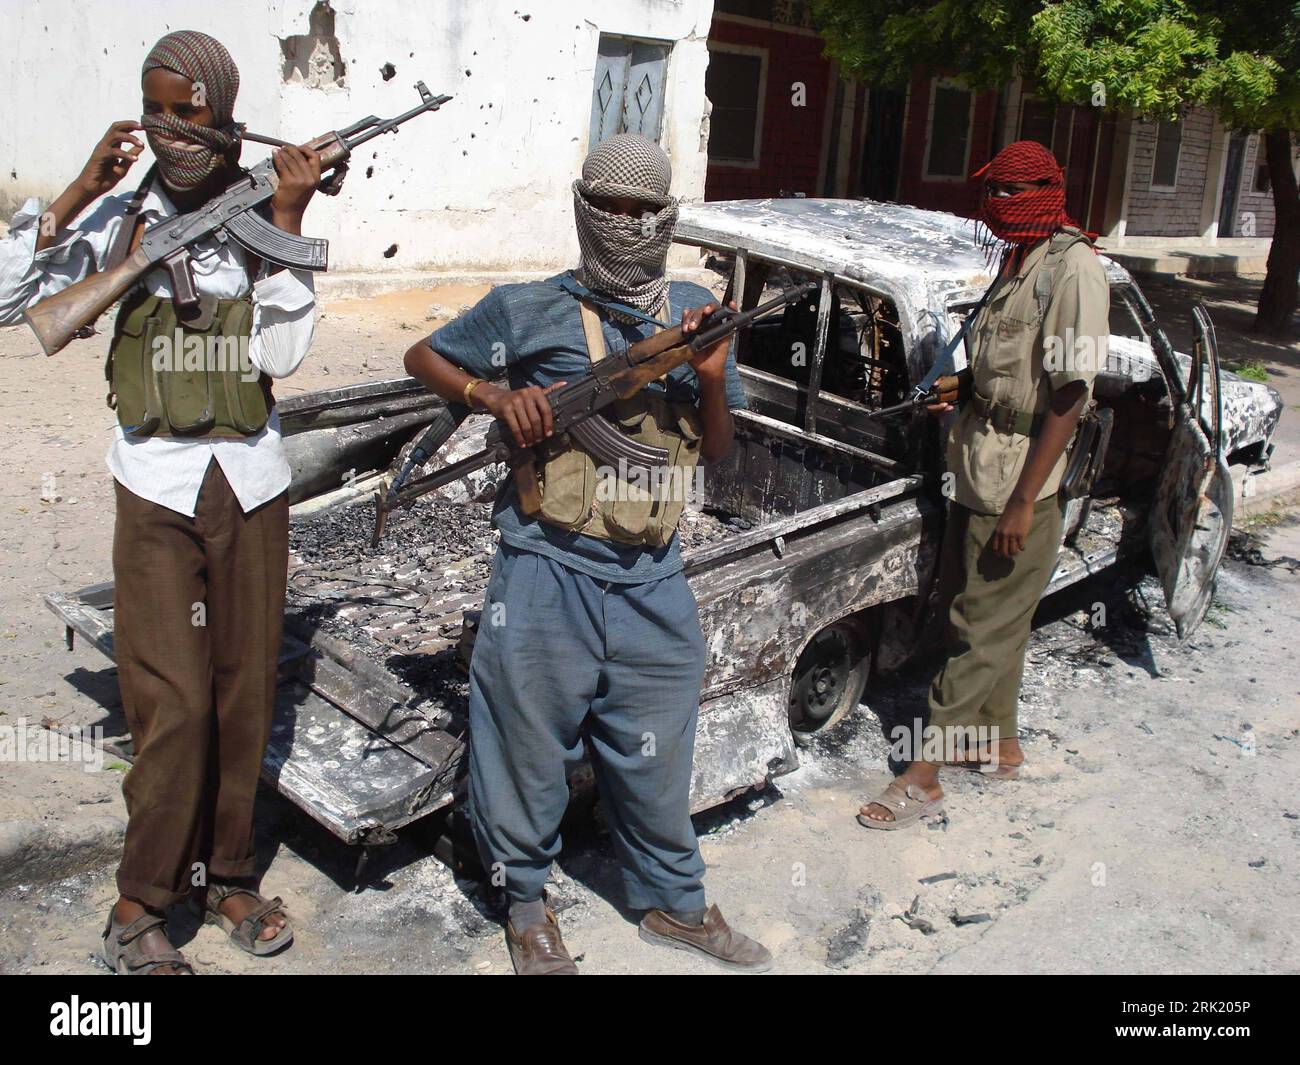 Bildnummer: 53010009  Datum: 11.05.2009  Copyright: imago/Xinhua Jugendliche, islamistische Rebellen posieren vermummt mit ihren  am Rande der Kämpfe zwischen islamistischen Aufständischen und Regierungstruppen in Mogadischu - Somalia PUBLICATIONxNOTxINxCHN, Personen , Highlight , premiumd; 2009, Somalia, Mogadischu, Politik, Kämpfe, Aufstand, Rebellion, Rebellen, vermummt, Teenager, Jugendliche, jung, bewaffnet, , , Schusswaffen, Moslem; , quer, Kbdig, Gruppenbild, Islam, Religion,  , Gesellschaft, Afrika, o0 Maschinenpistole    Bildnummer 53010009 Date 11 05 2009 Copyright Imago XINHUA young Stock Photo